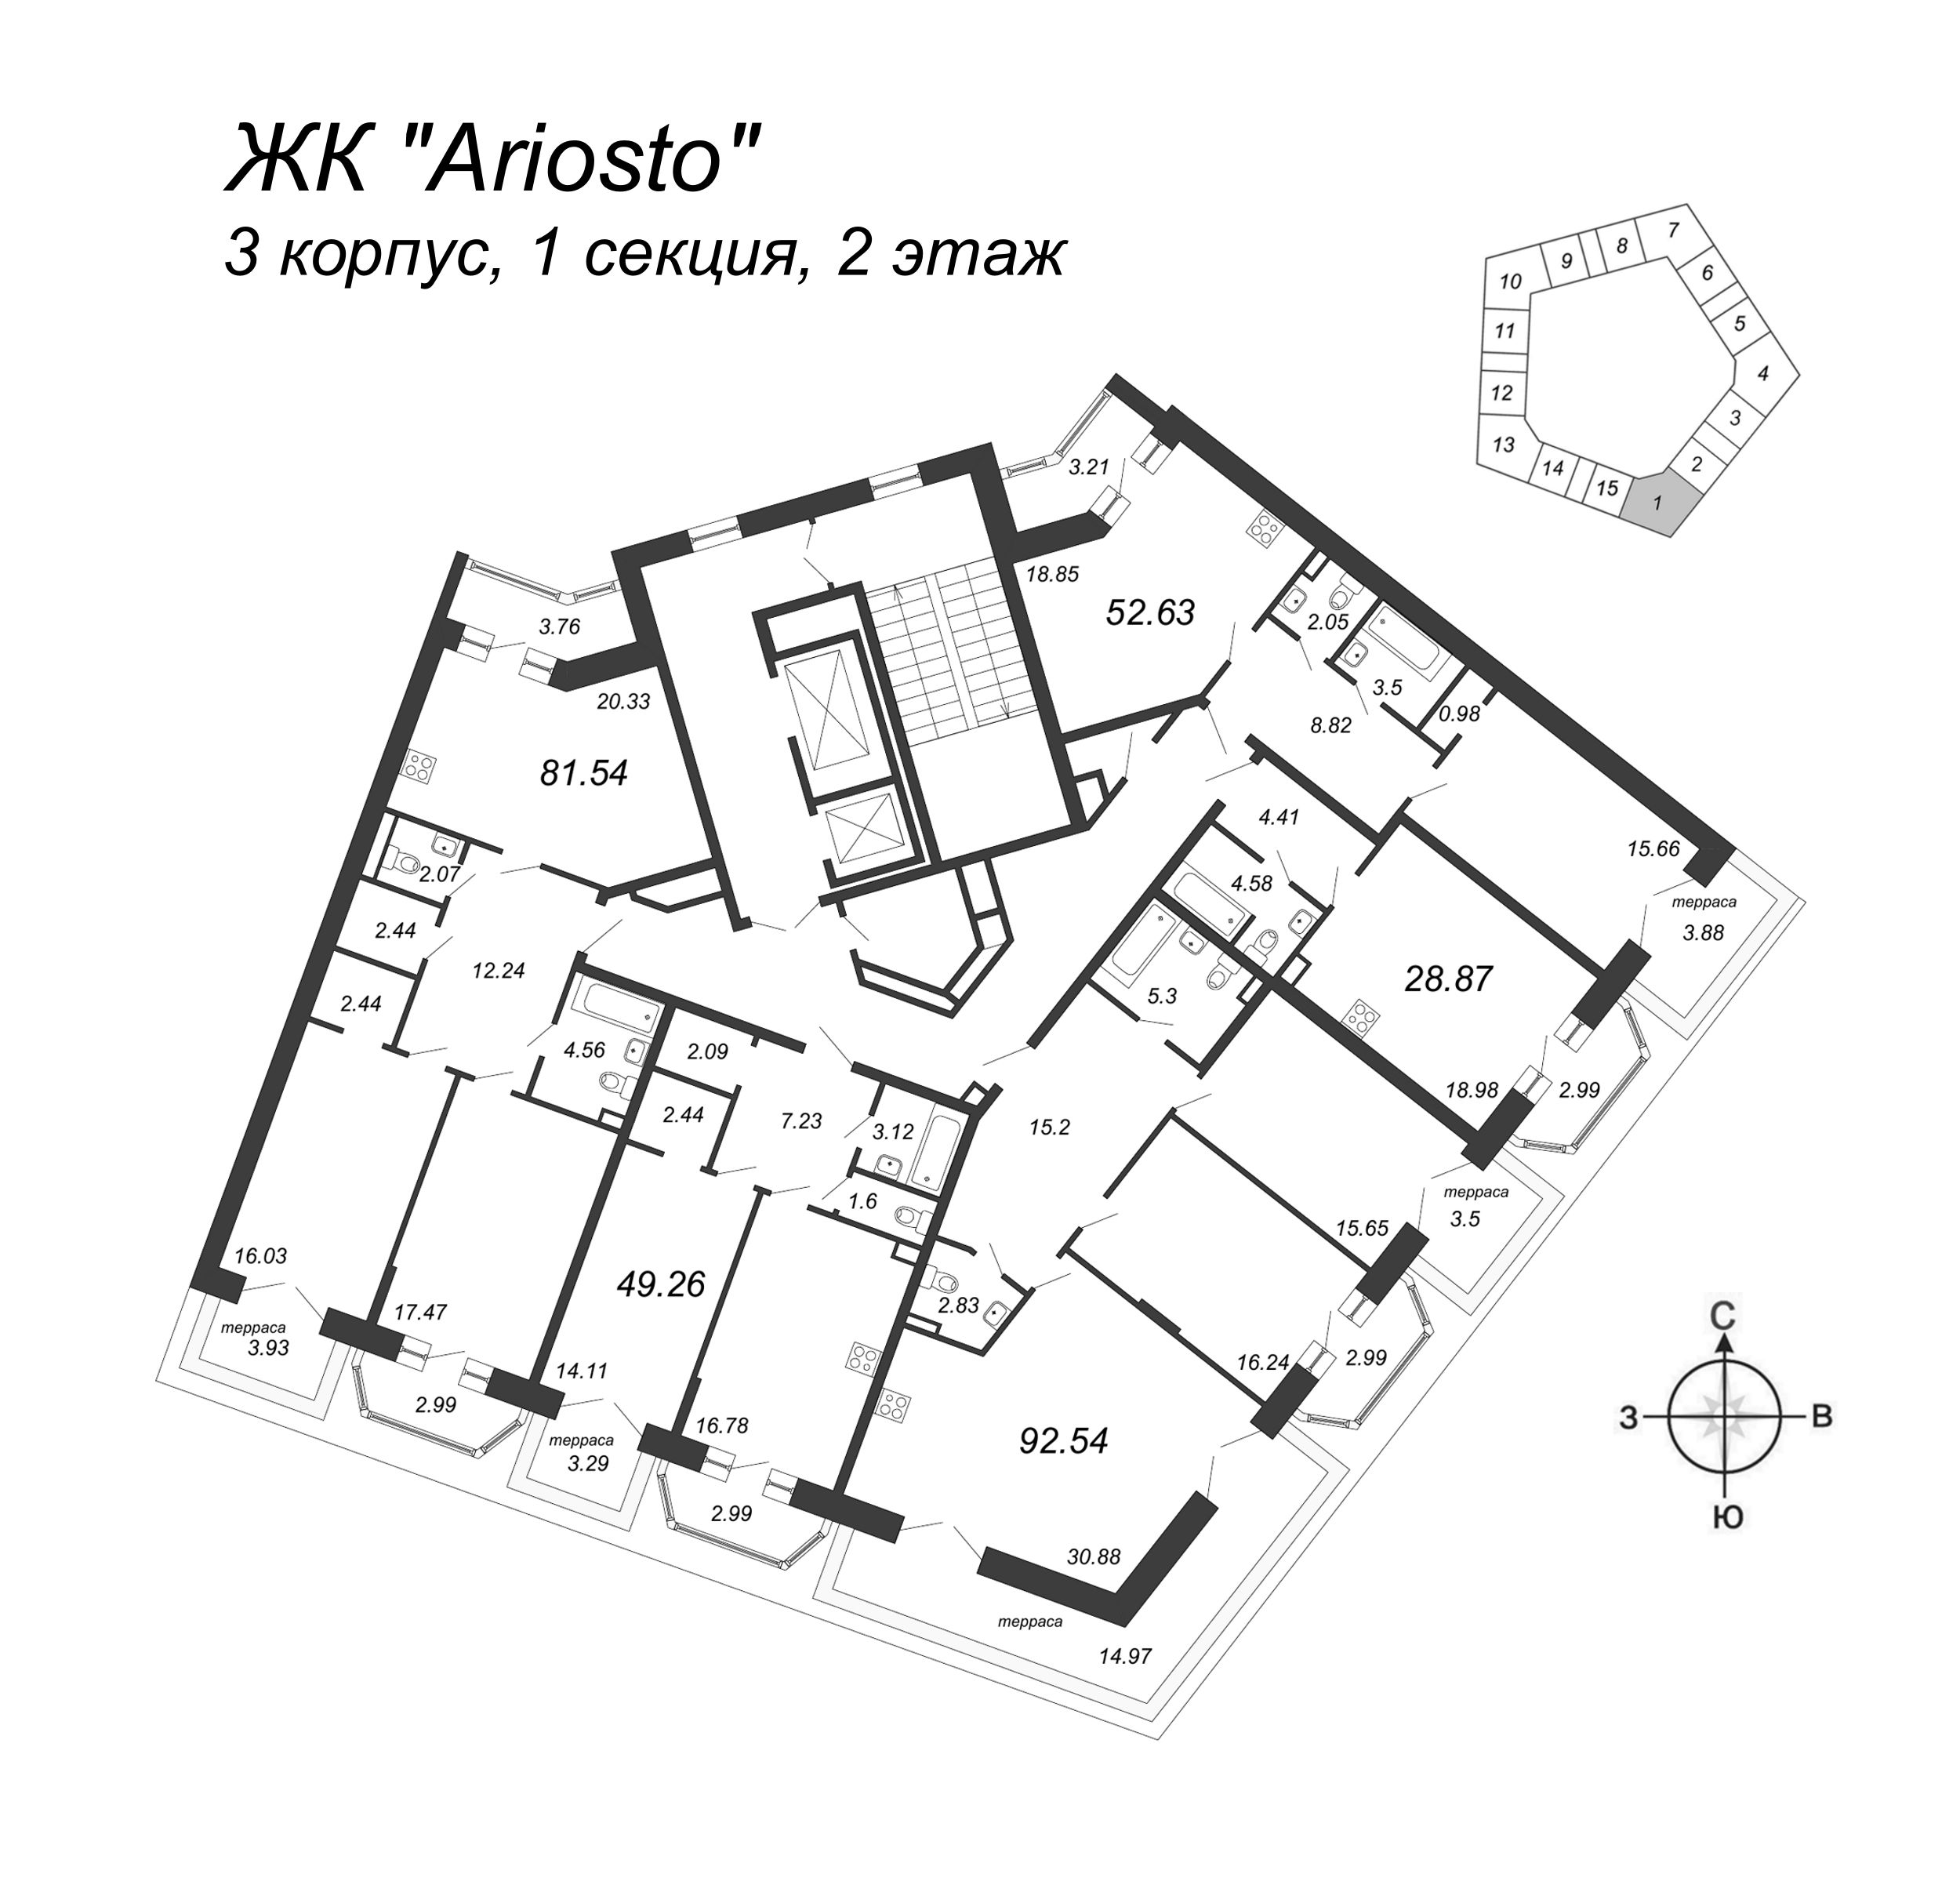 3-комнатная (Евро) квартира, 92.54 м² в ЖК "Ariosto" - планировка этажа